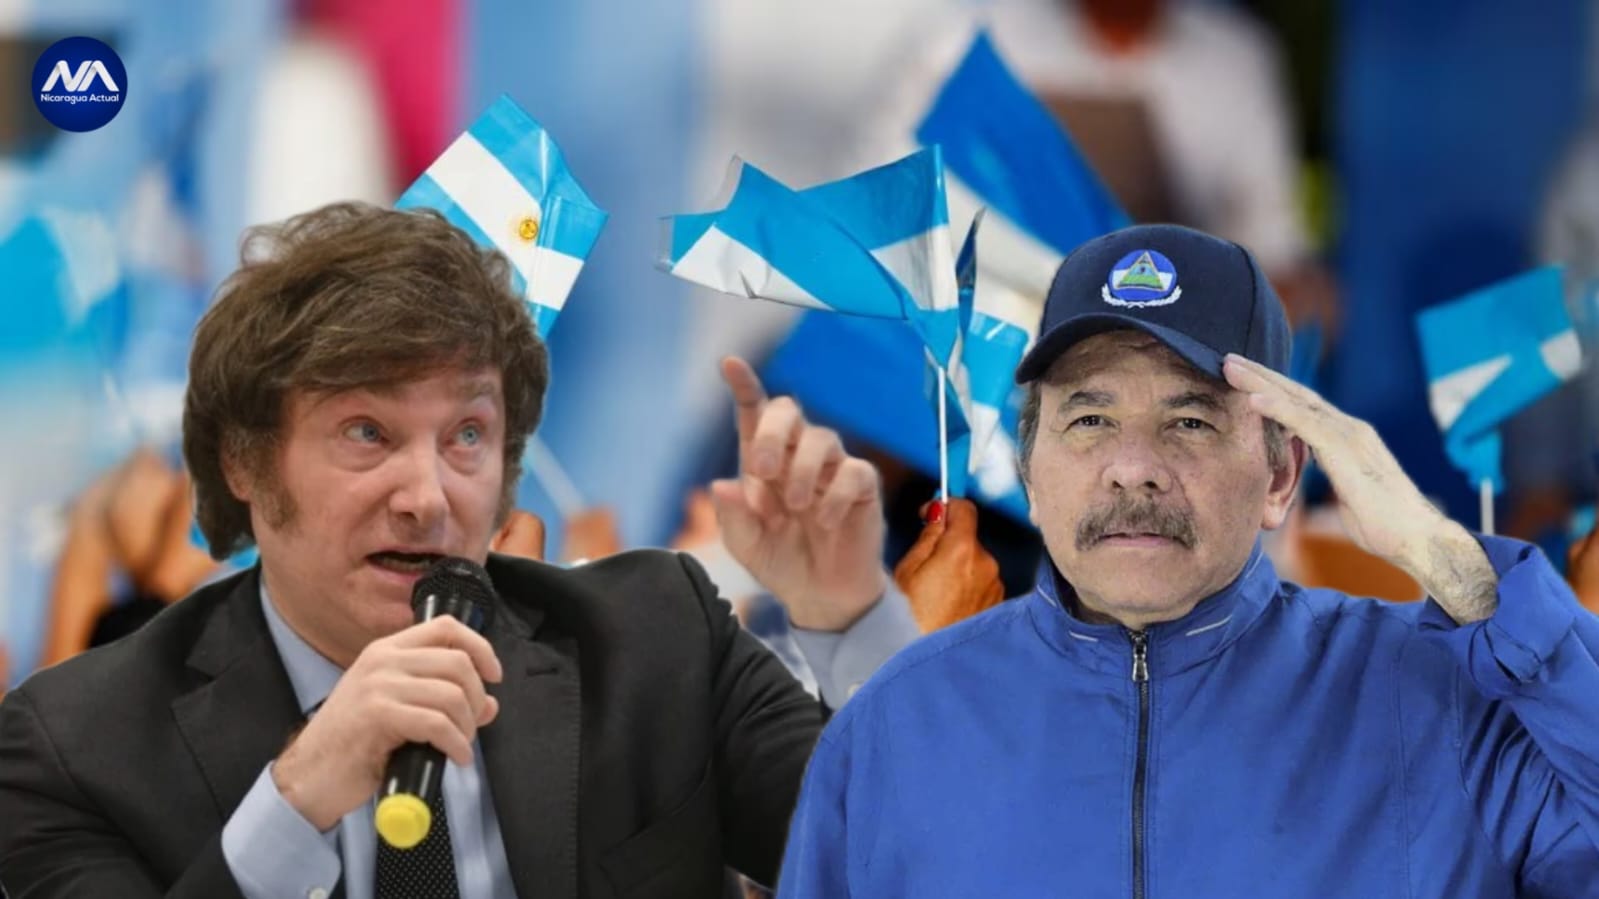 Candidato opositor de Argentina Javier Milei dice que de ganar elecciones suspenderá relaciones con Daniel Ortega